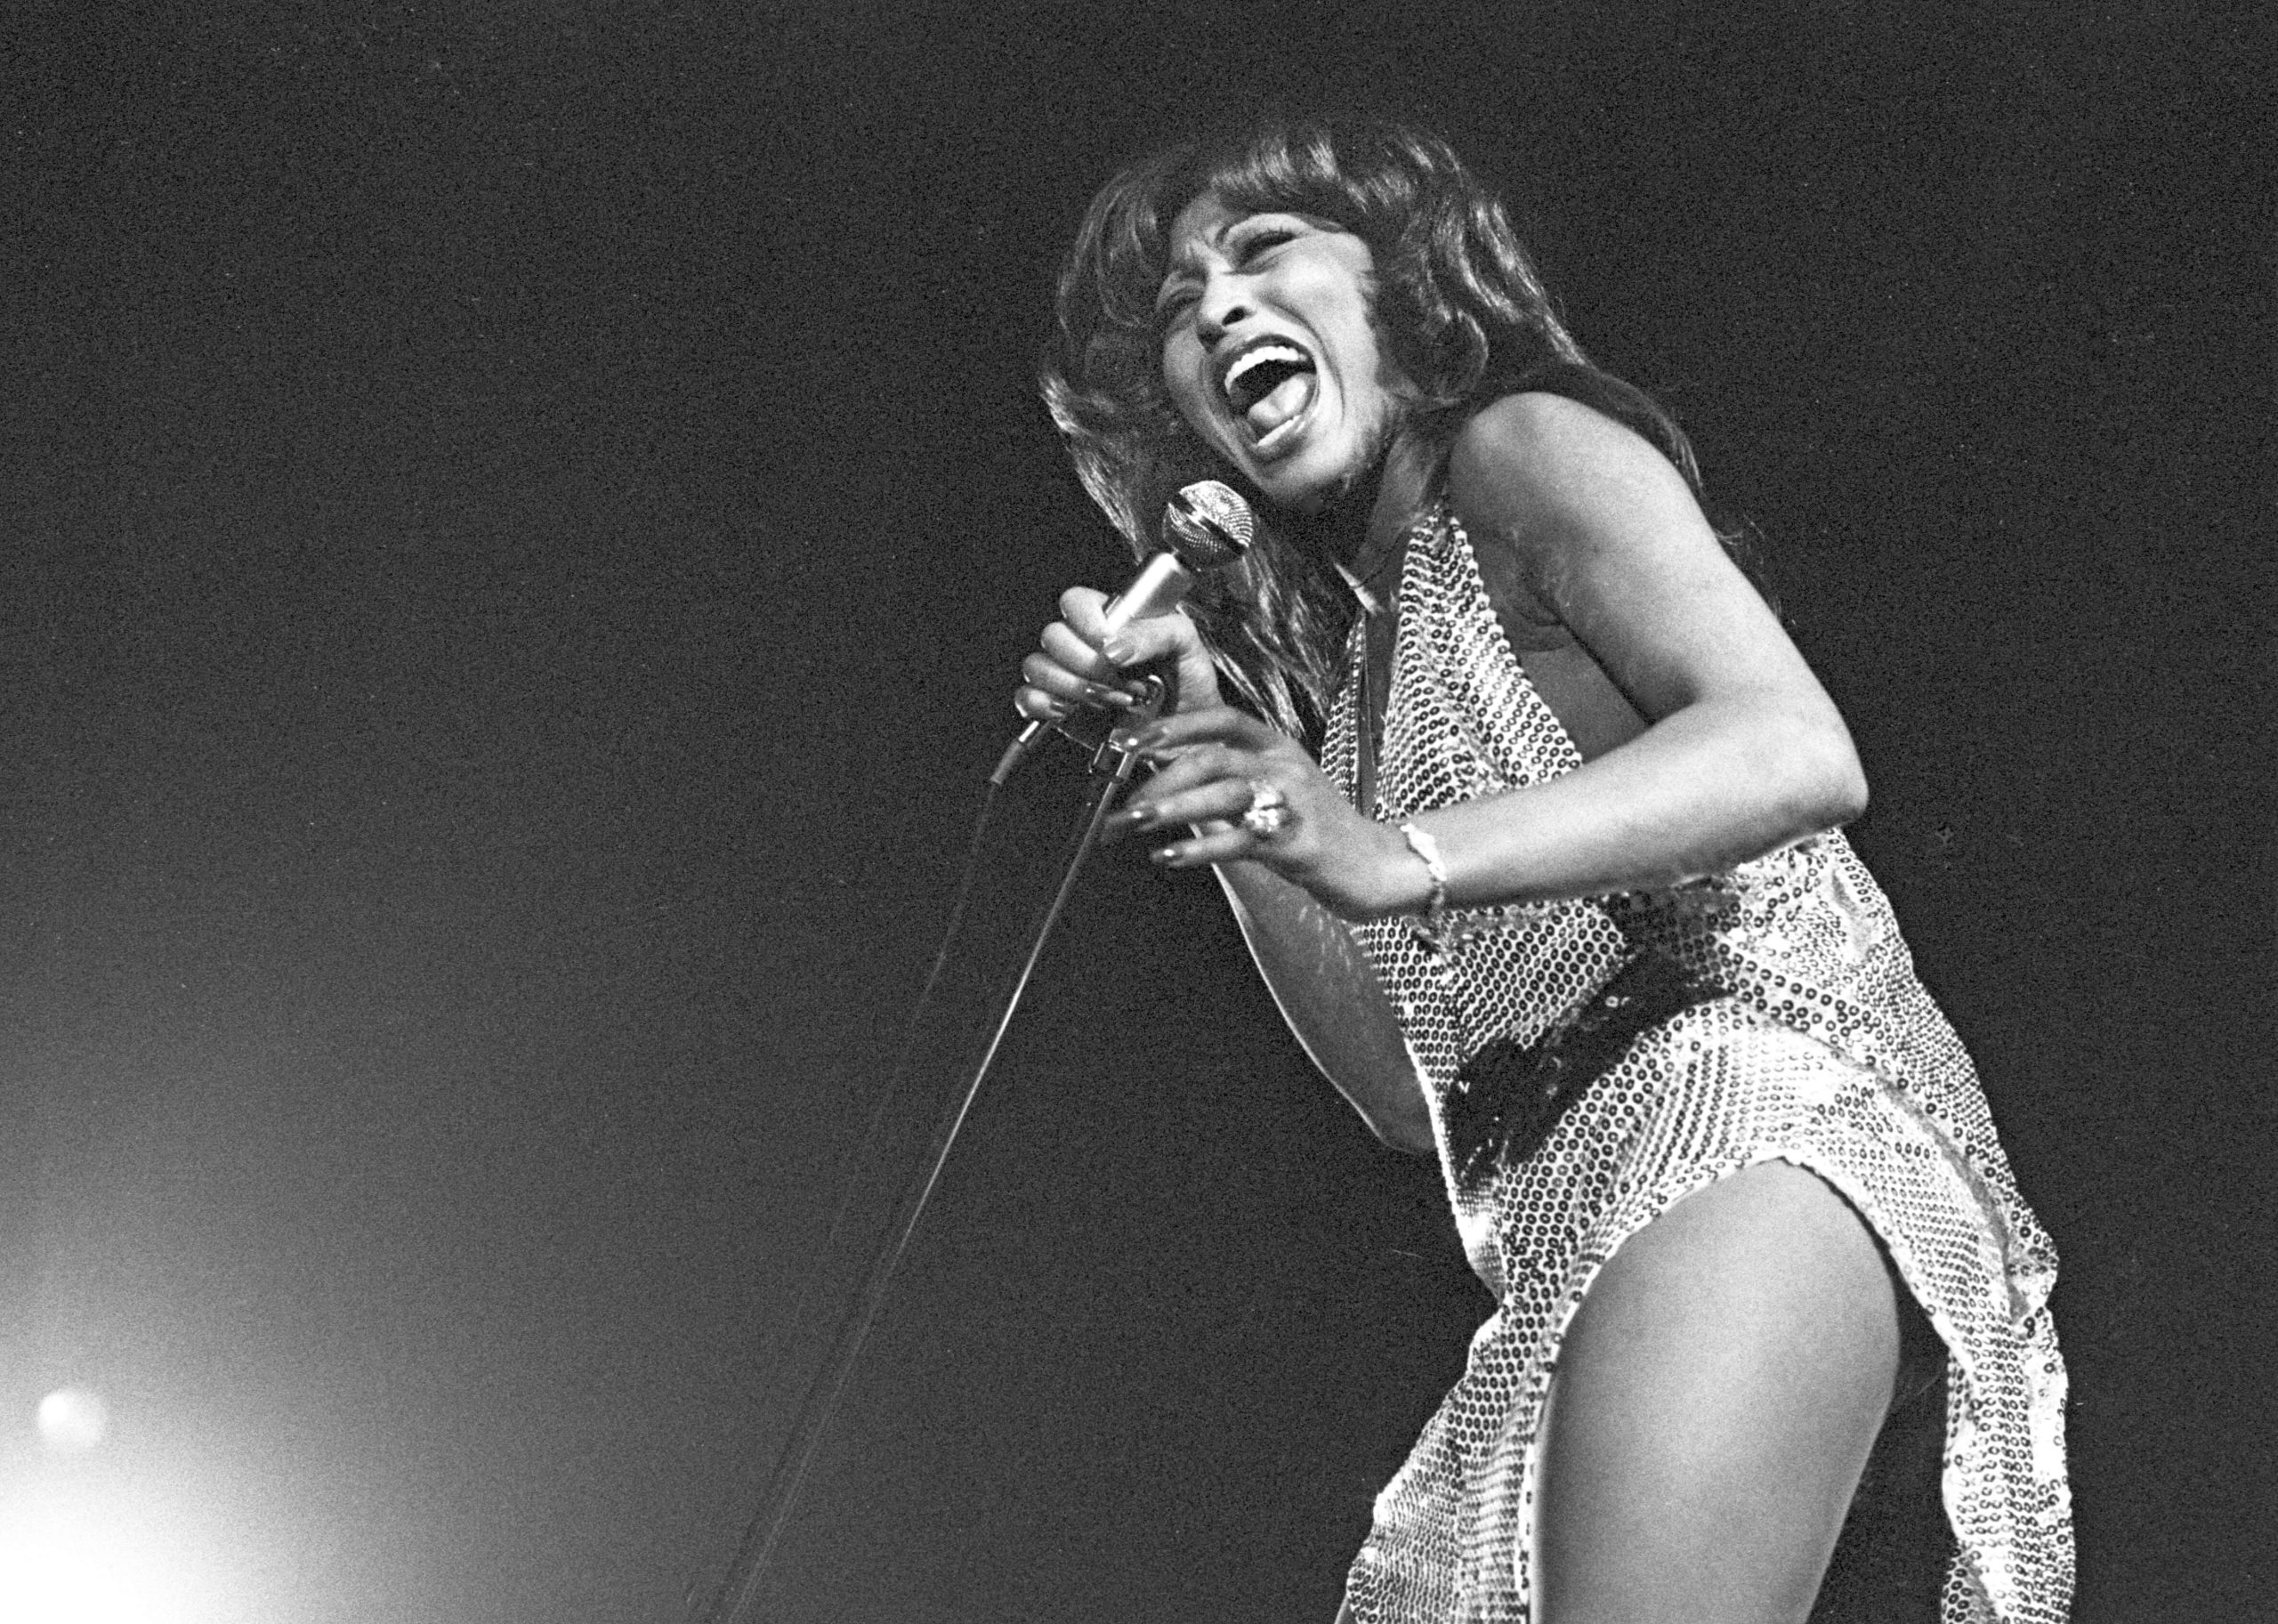 Məşhur rok və soul müğənnisi Tina Turner 83 yaşında dünyasını dəyişib